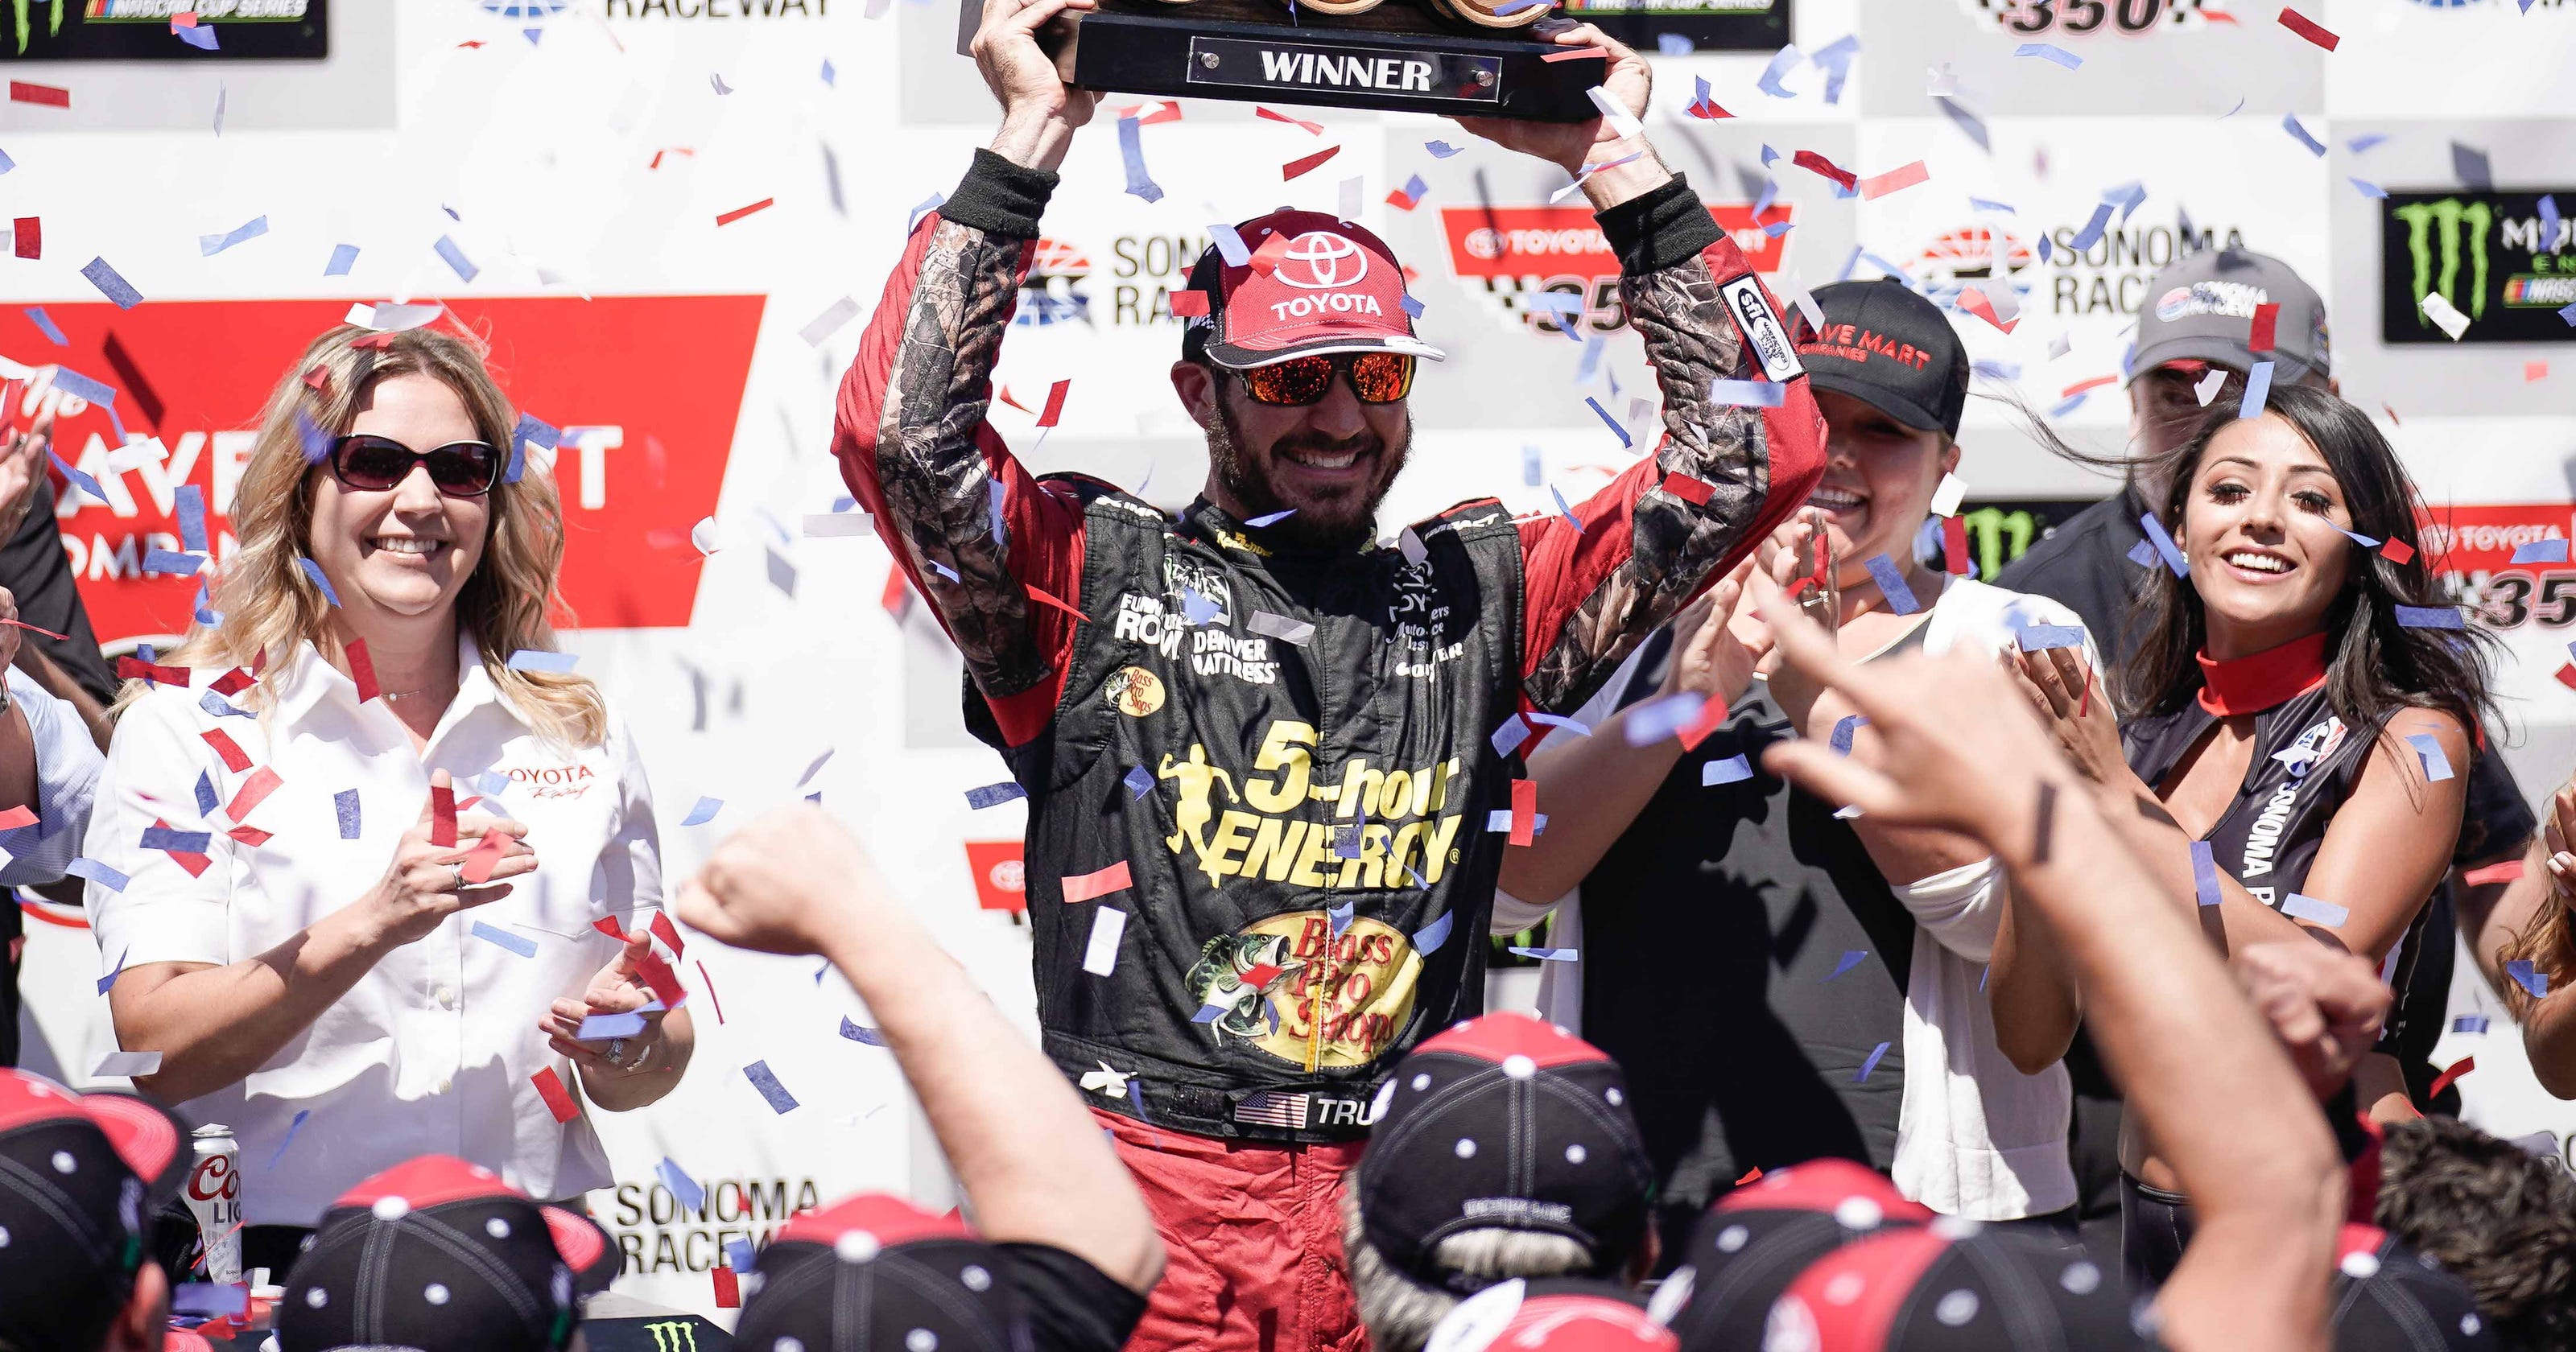 NASCAR: Martin Truex Jr. seeks new sponsor, first win at New Hampshire